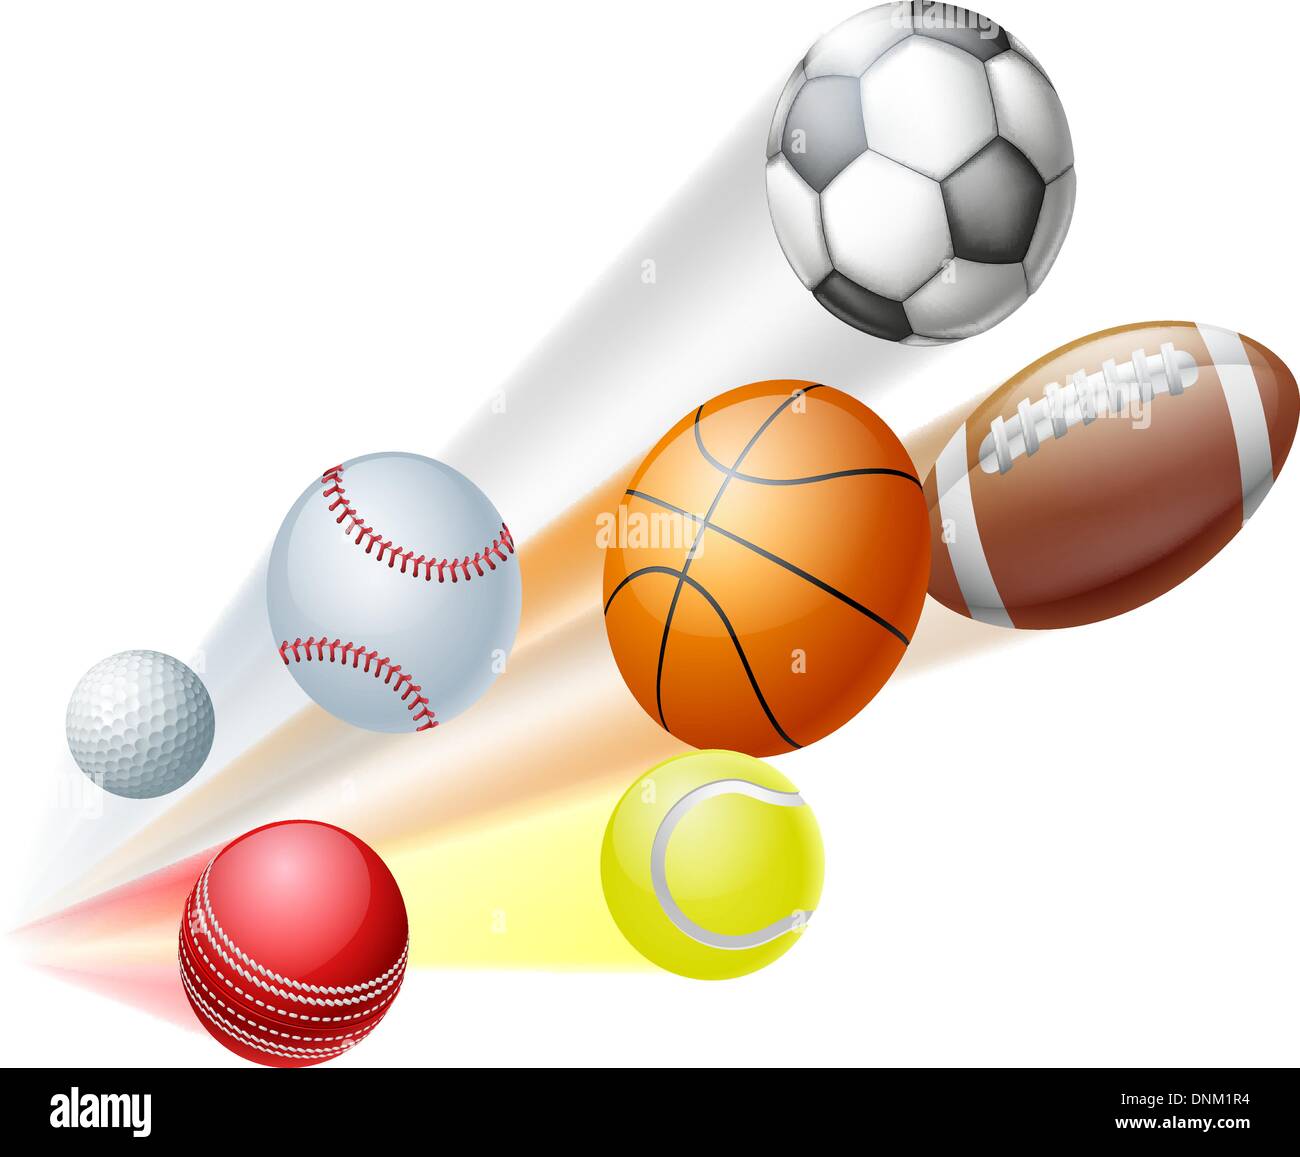 Illustrazione di un sacco di sport in modo dinamico a sfera volare in aria con motion blur Illustrazione Vettoriale